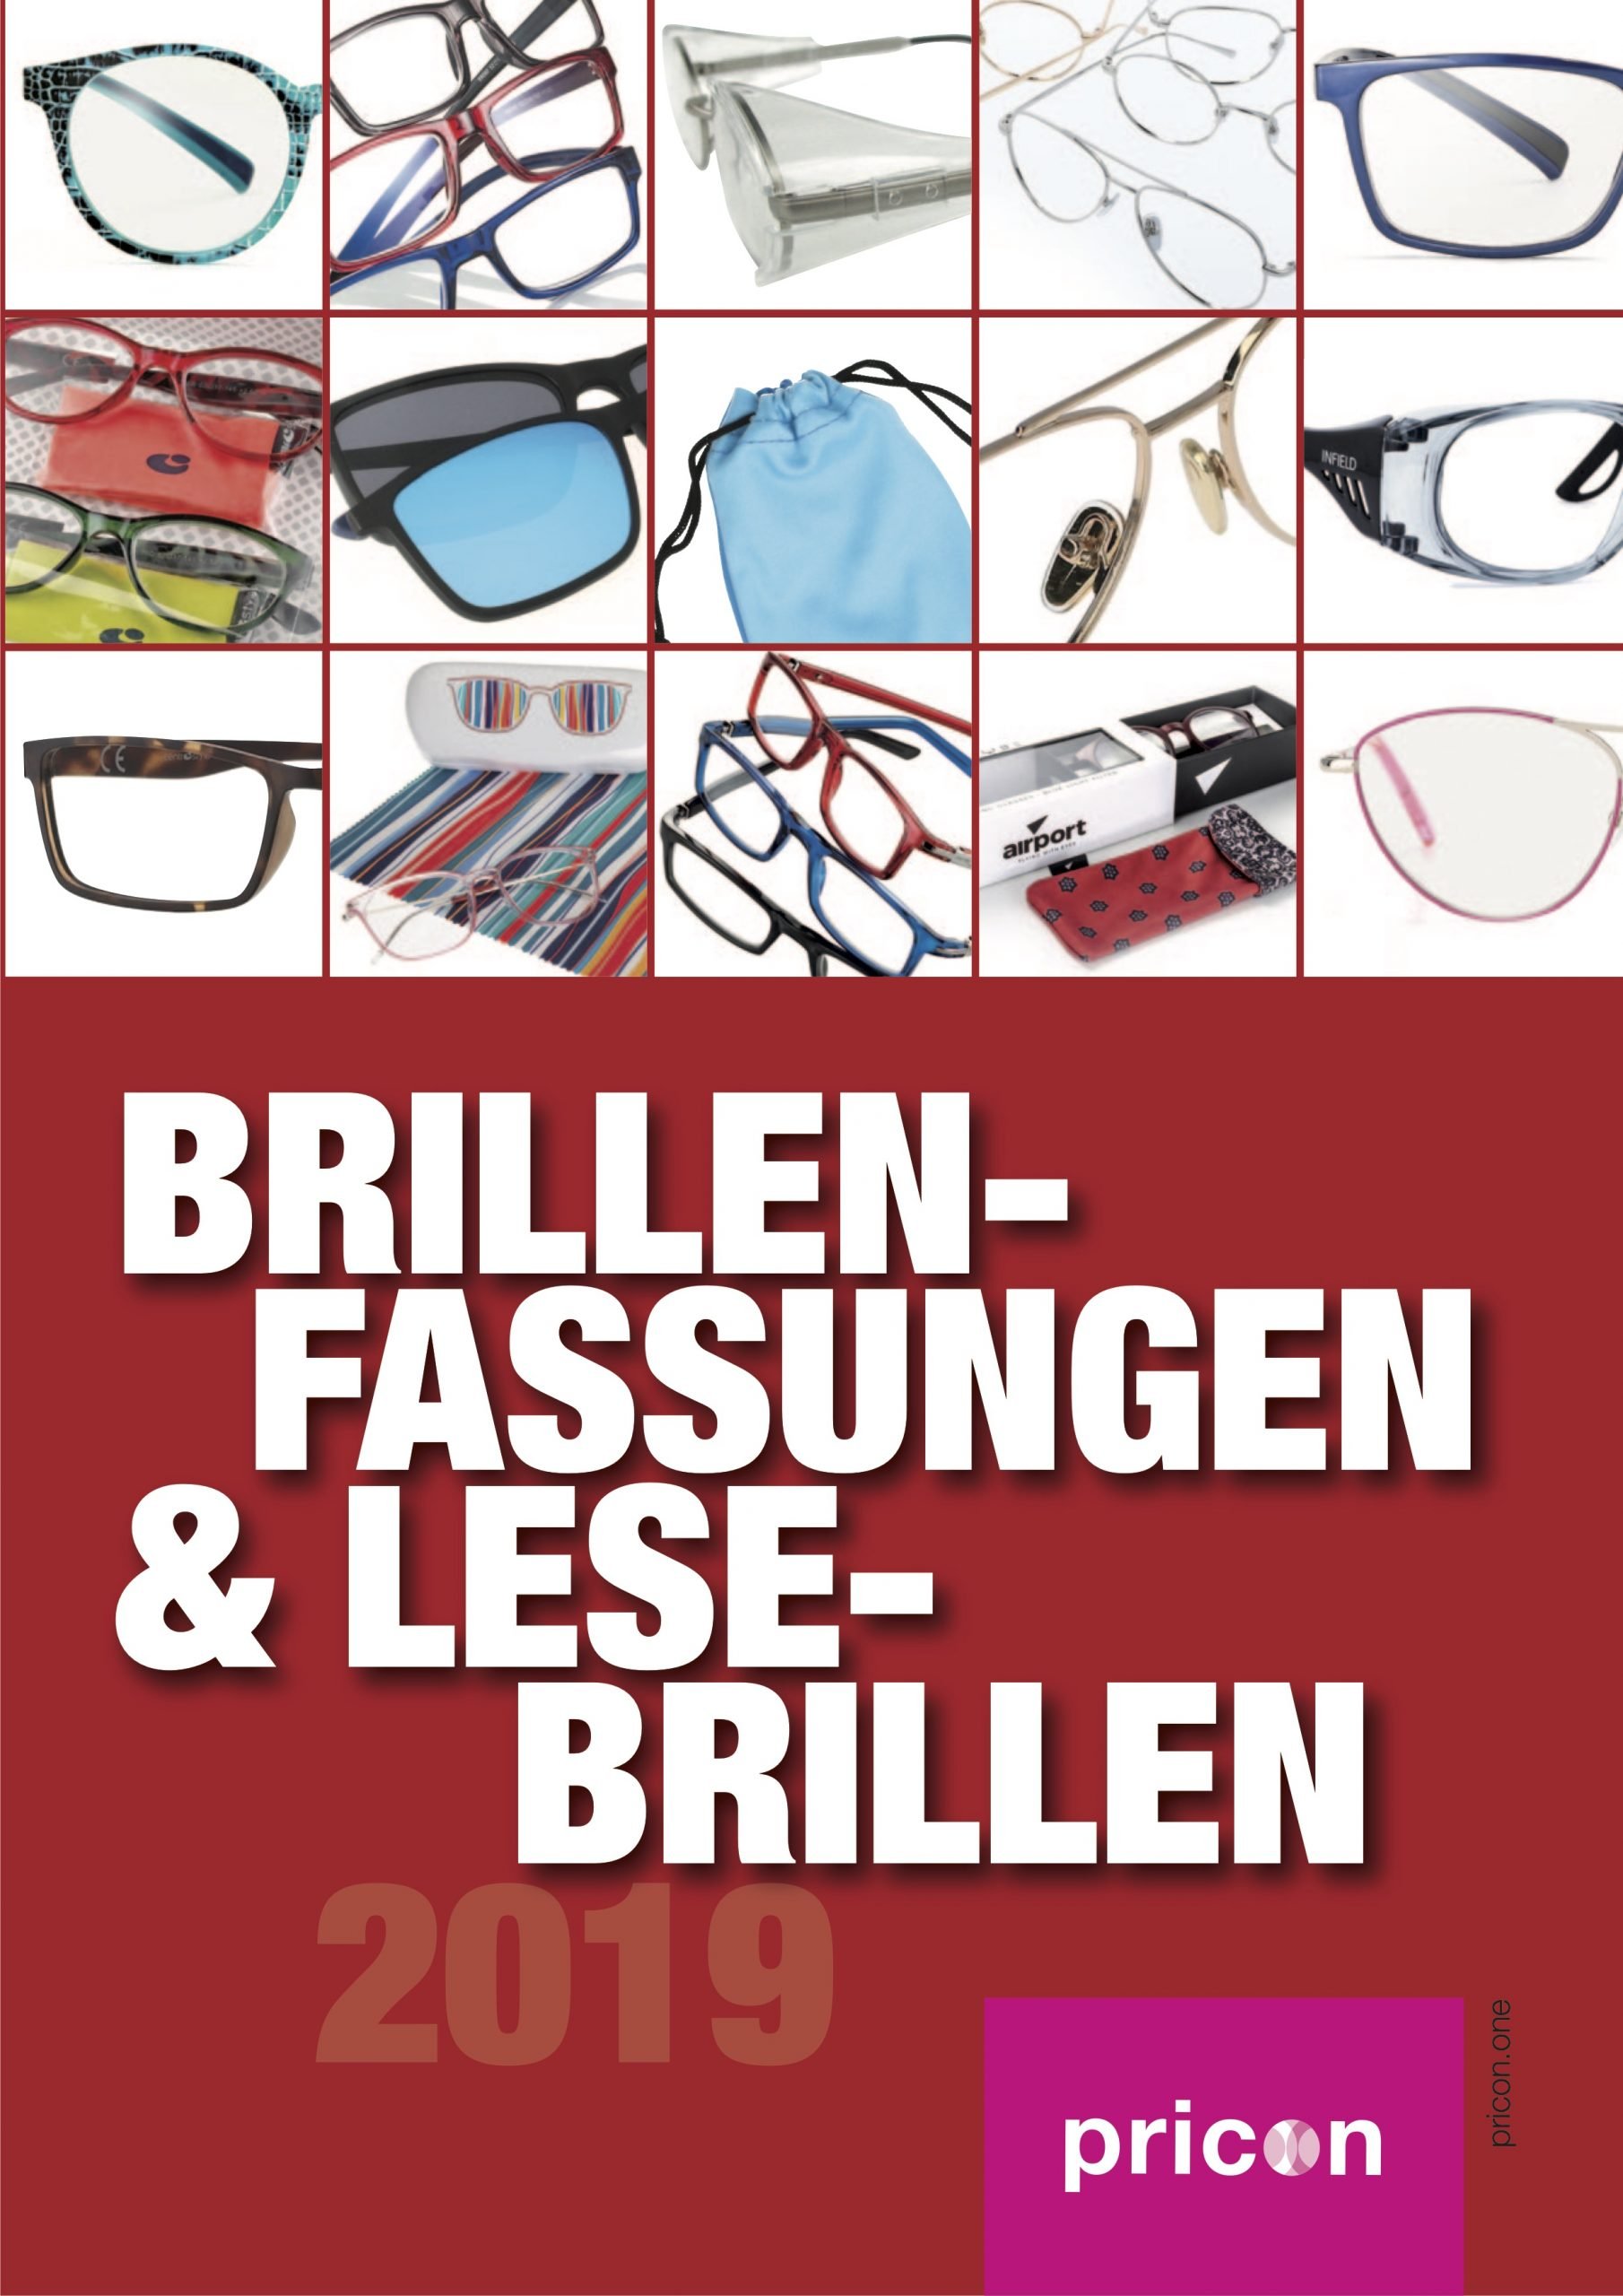 Neuer pricon-Katalog „Brillenfassungen & Lesebrillen“ jetzt verfügbar